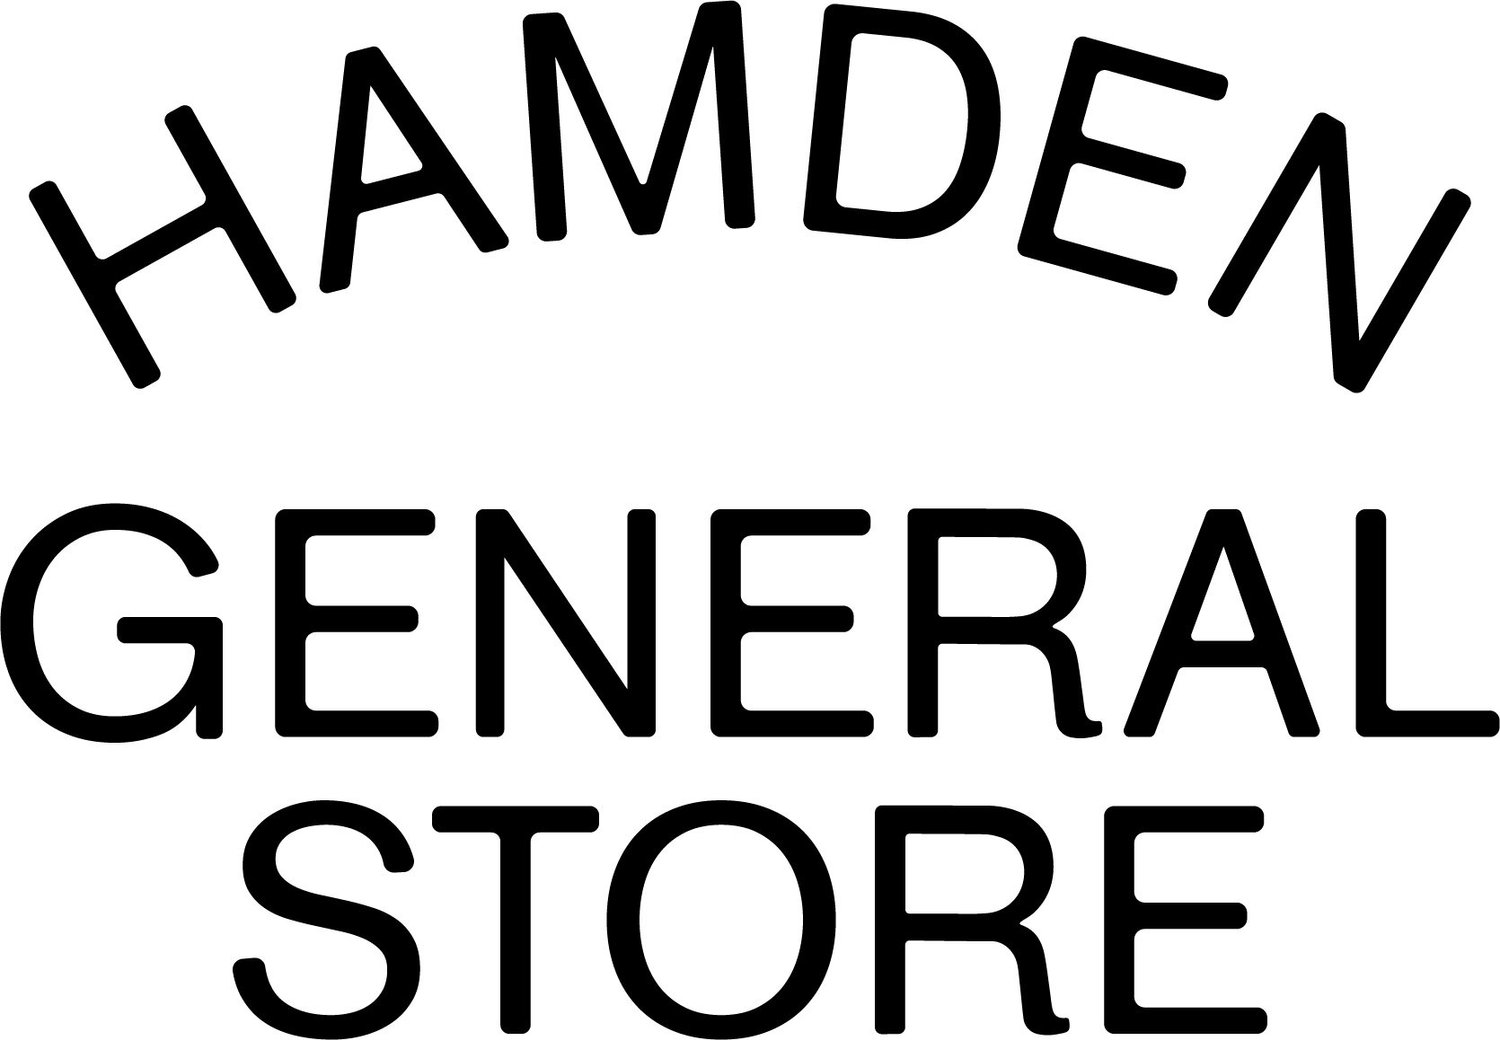 Hamden General Store 